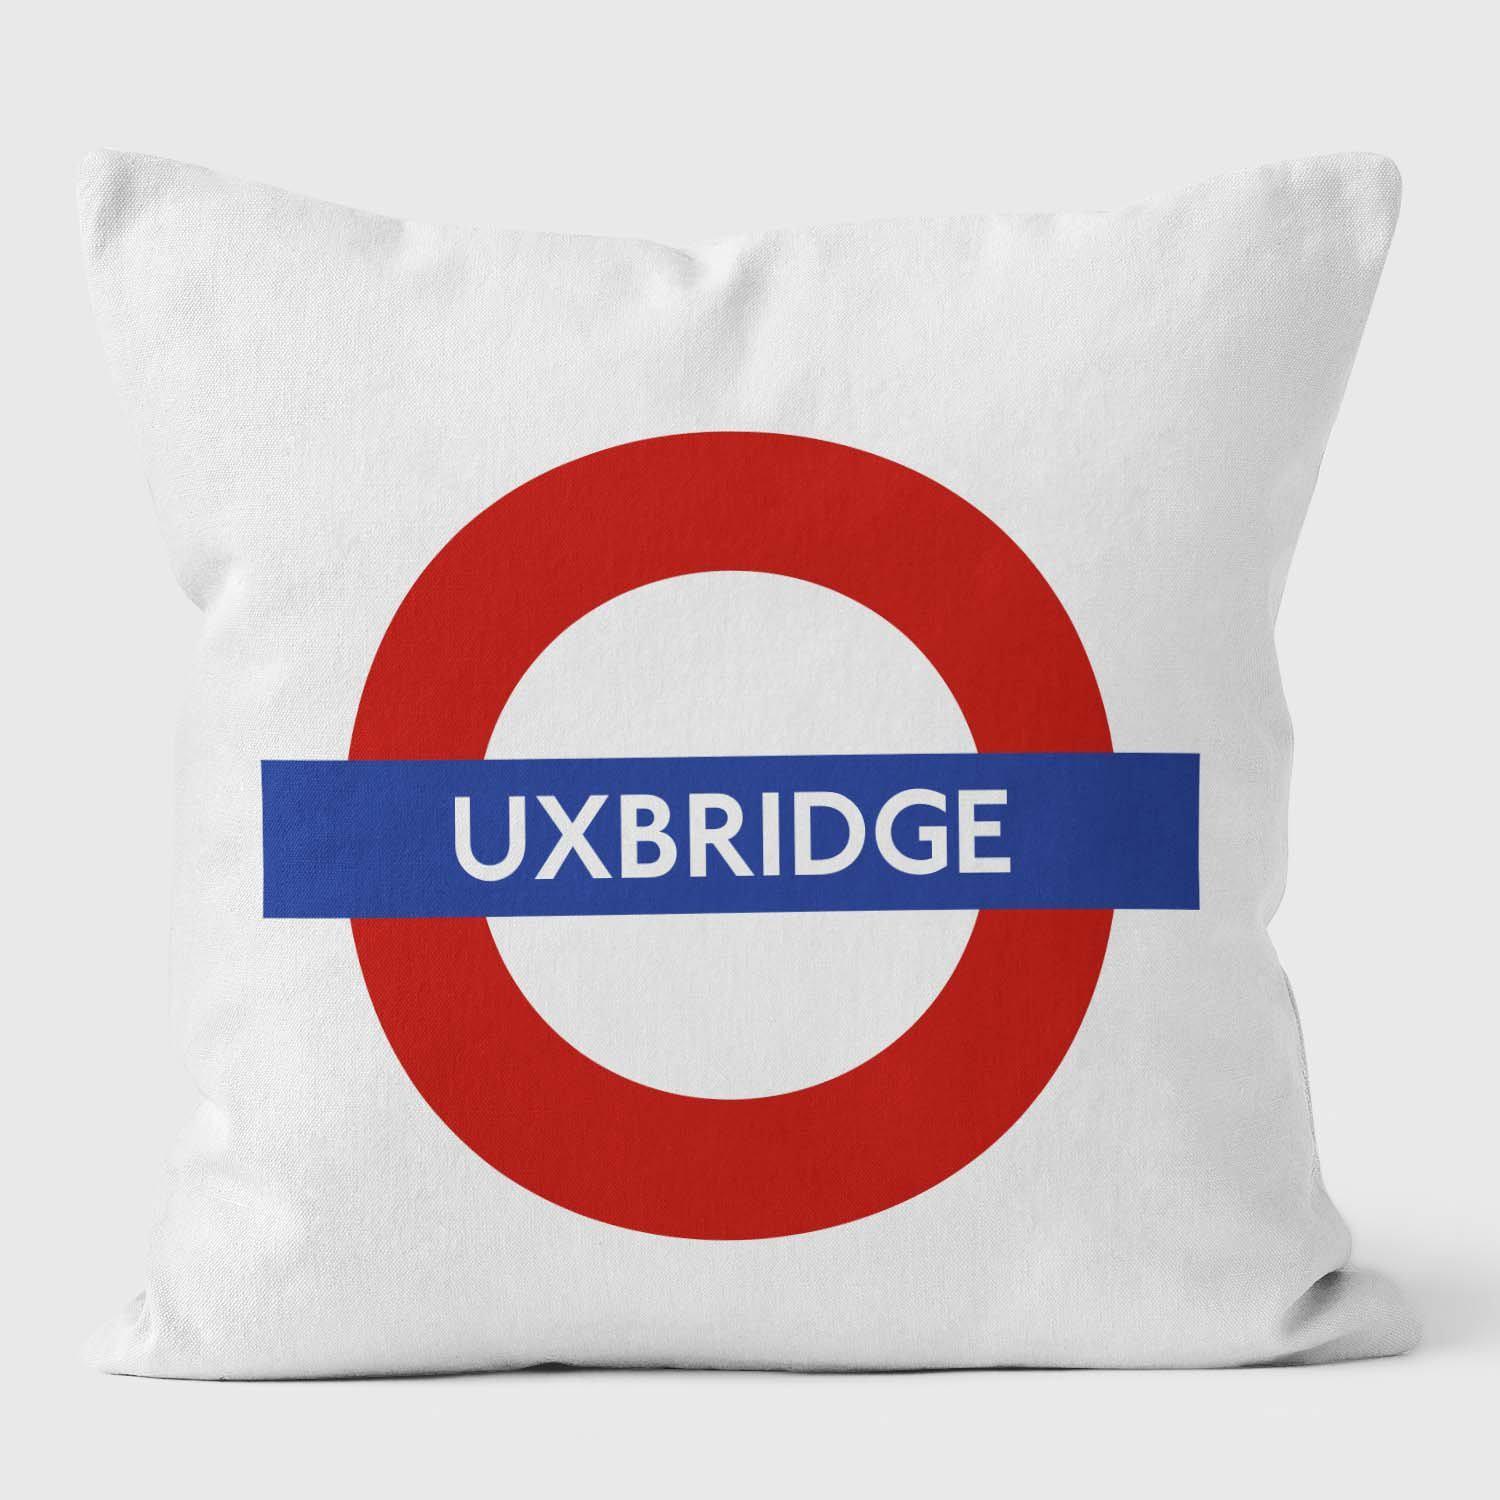 Uxbridge London Underground Tube Station Roundel Cushion - Handmade Cushions UK - WeLoveCushions